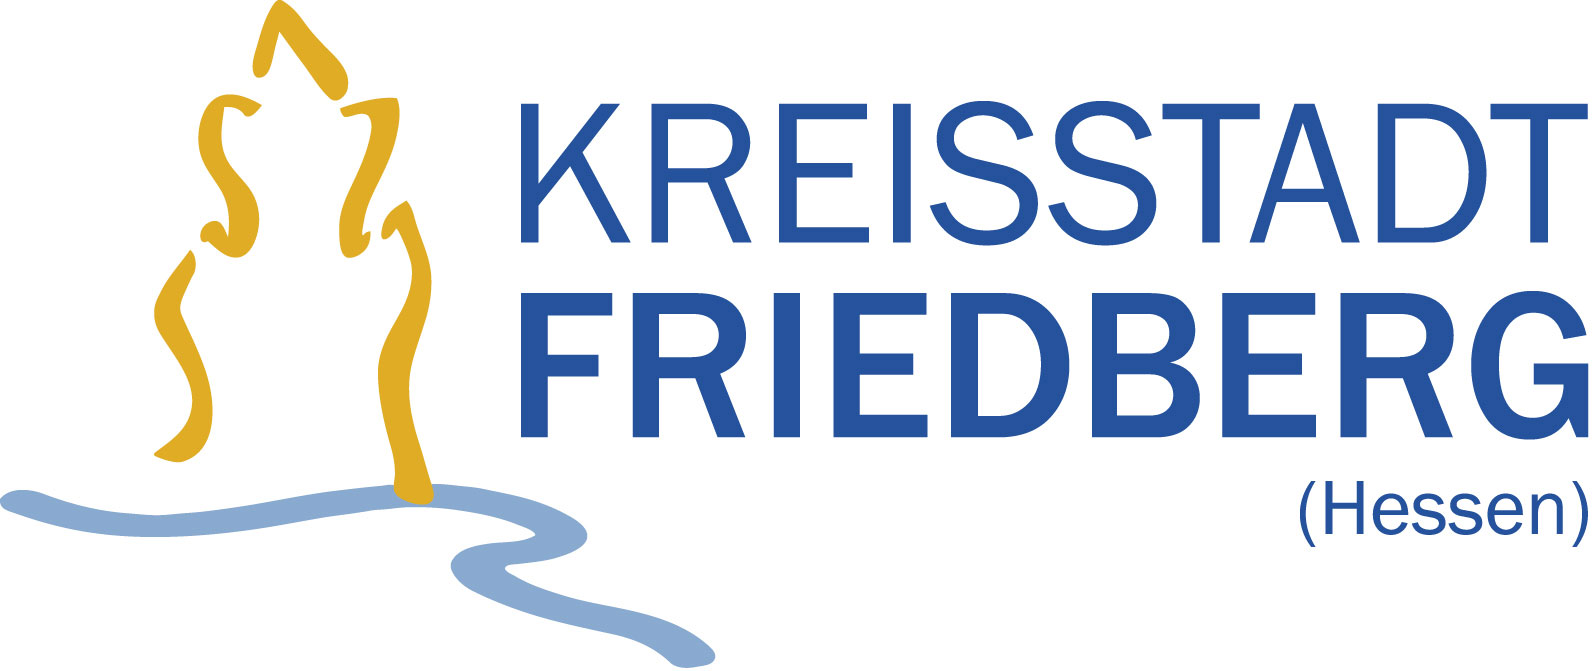 Bild vom Logo der Kreisstadt Friedberg in Hessen.